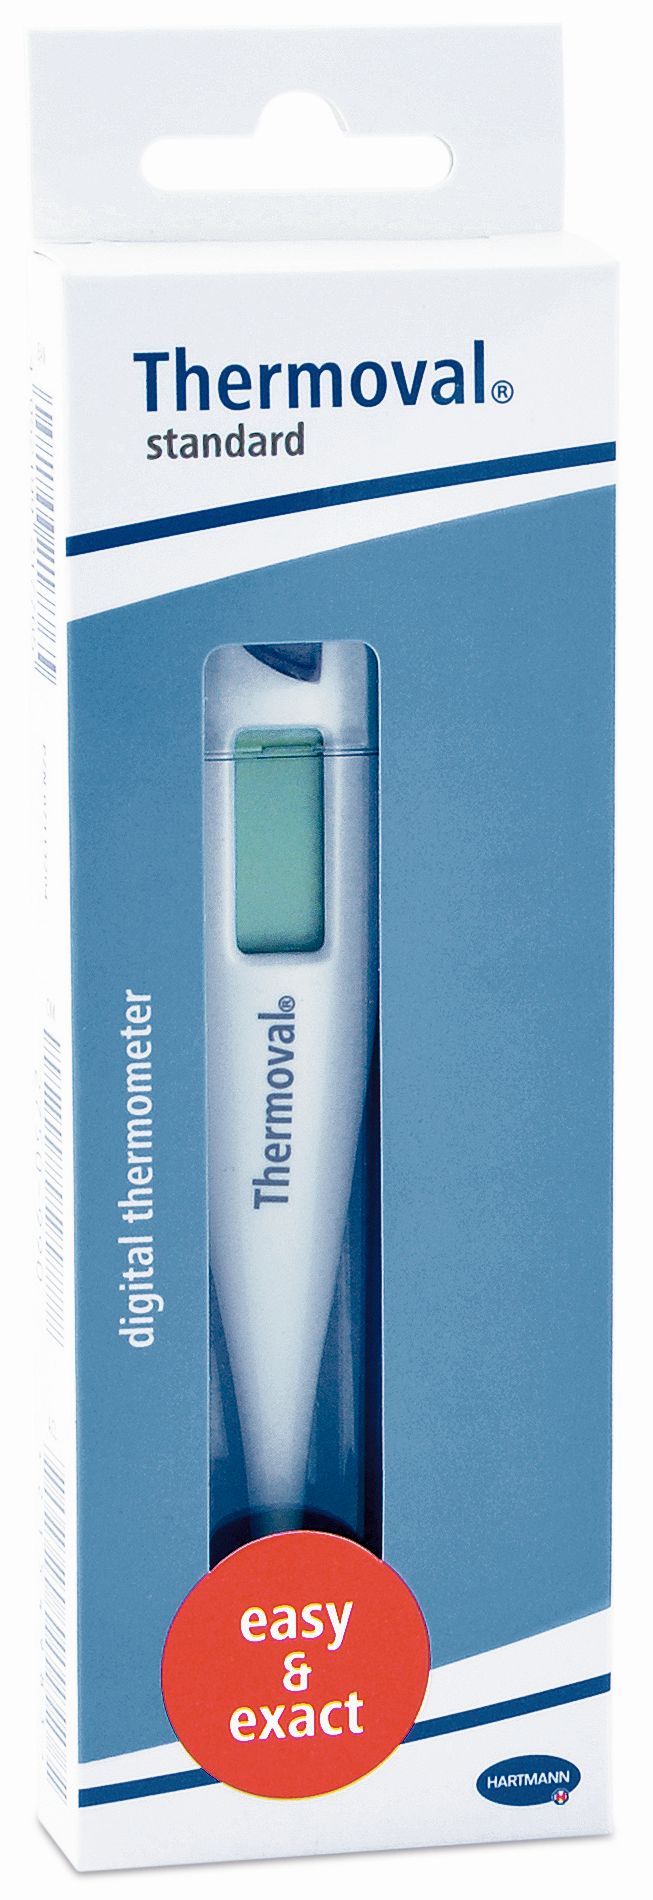 Termometre - Termometru digital Thermoval Standard, Hartmann, sinapis.ro